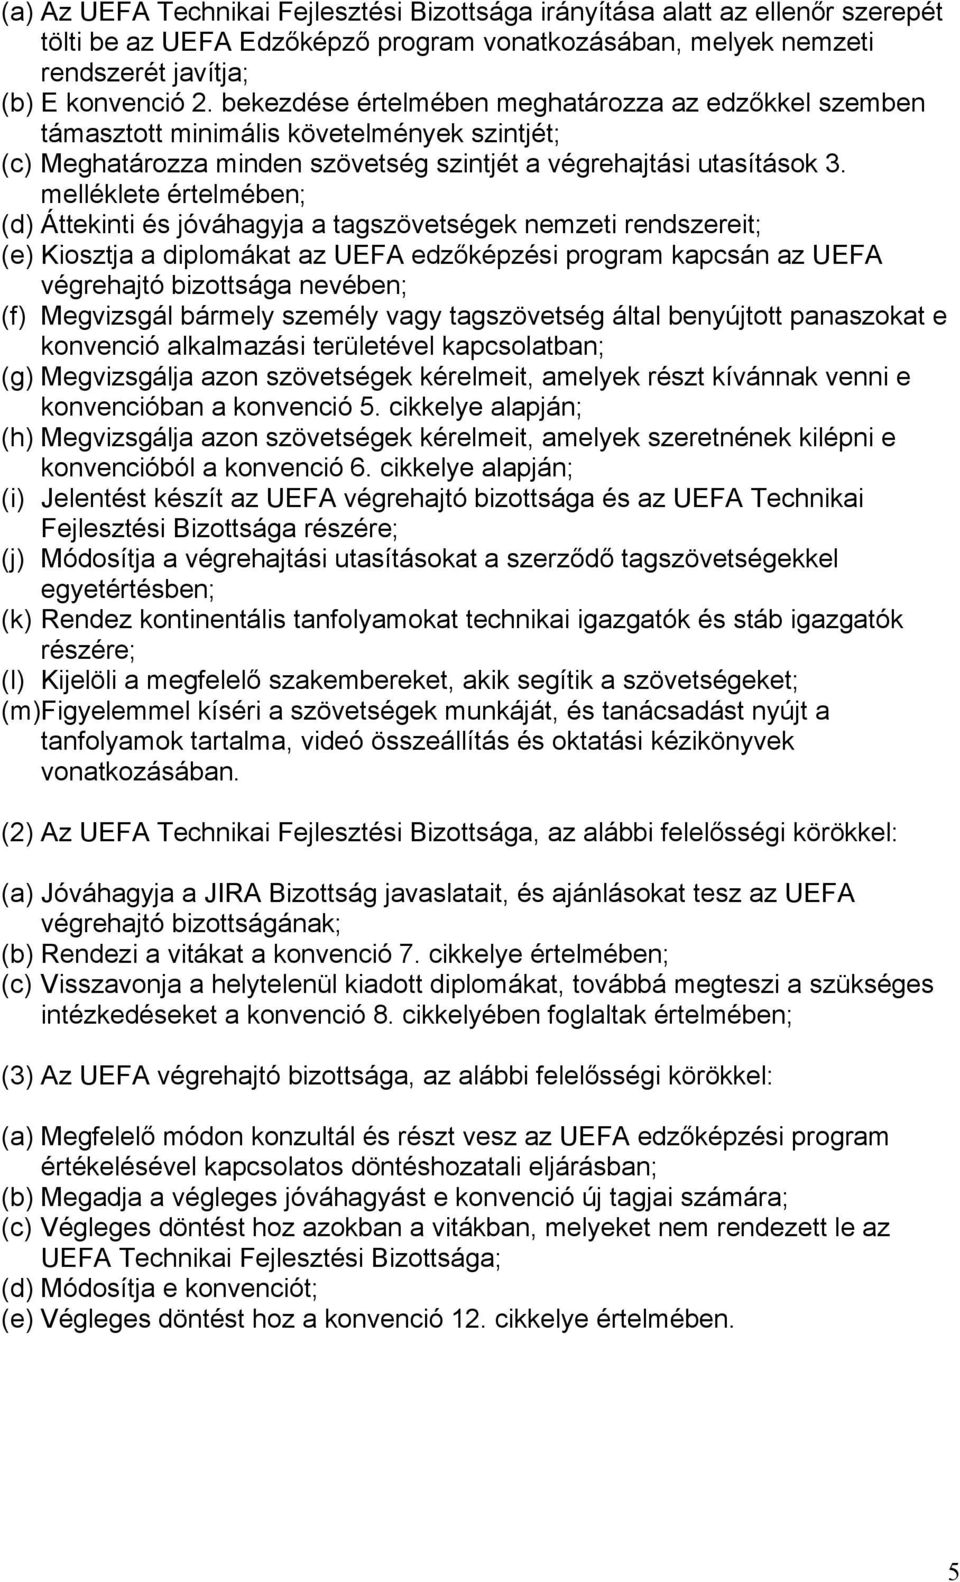 melléklete értelmében; (d) Áttekinti és jóváhagyja a tagszövetségek nemzeti rendszereit; (e) Kiosztja a diplomákat az UEFA edzőképzési program kapcsán az UEFA végrehajtó bizottsága nevében; (f)